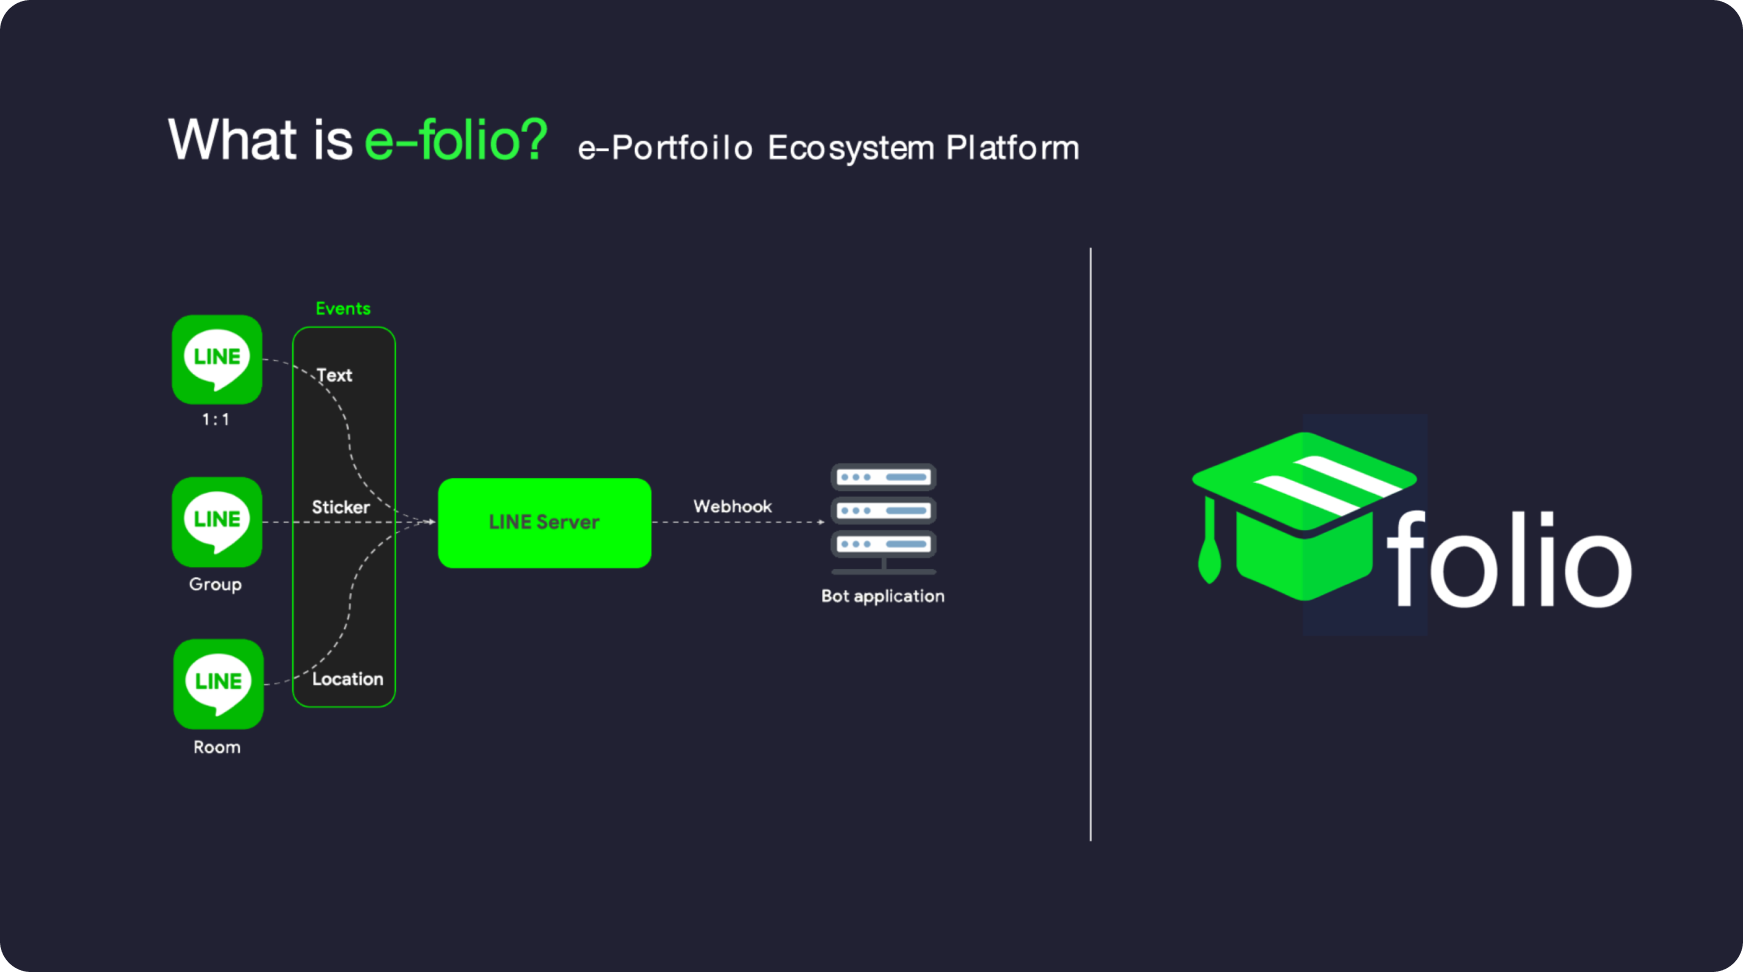 E-Portfolio Ecosystem Platform